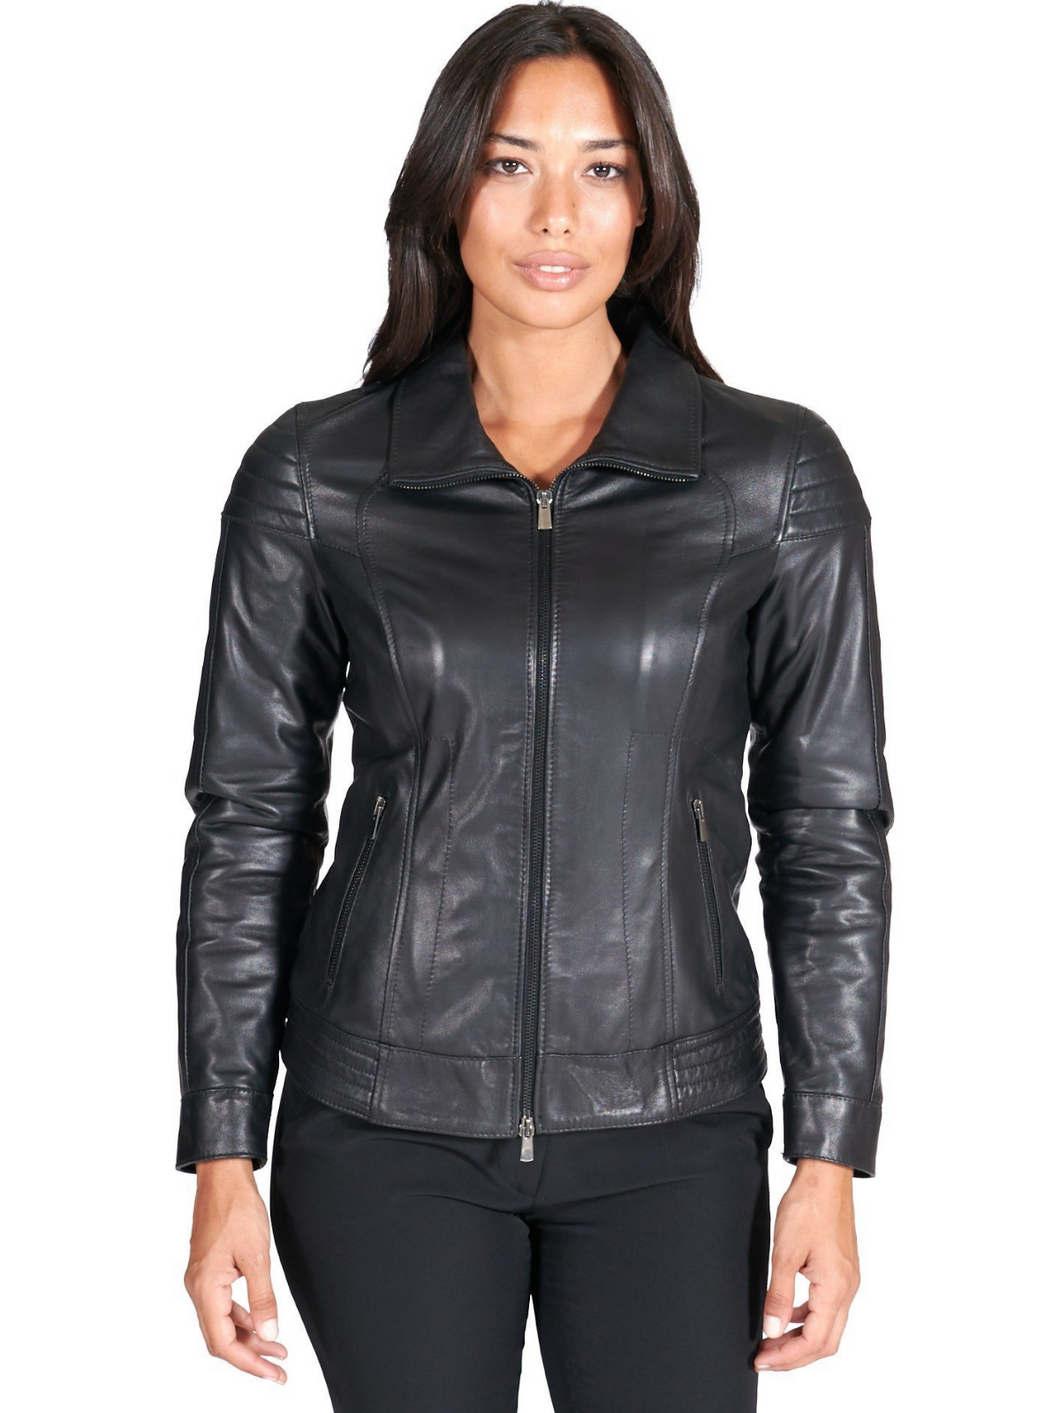 Women’s Casual Leather Black Biker Jacket